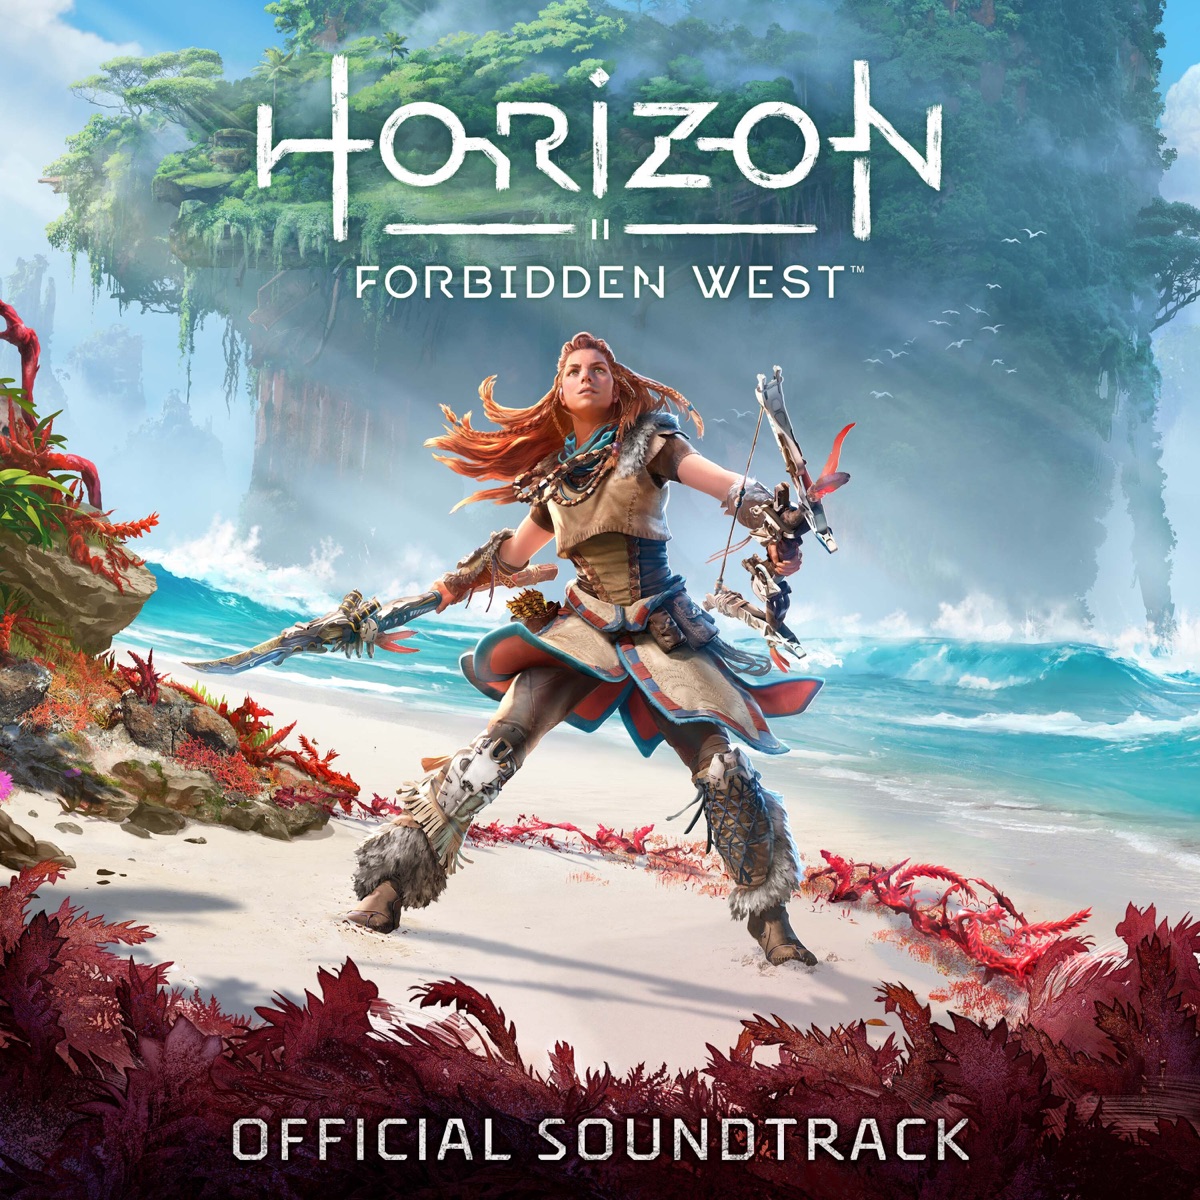 Joris de Man, Niels van der Leest, Oleksa Lozowchuk & The Flight - Horizon Forbidden West (Original Soundtrack)